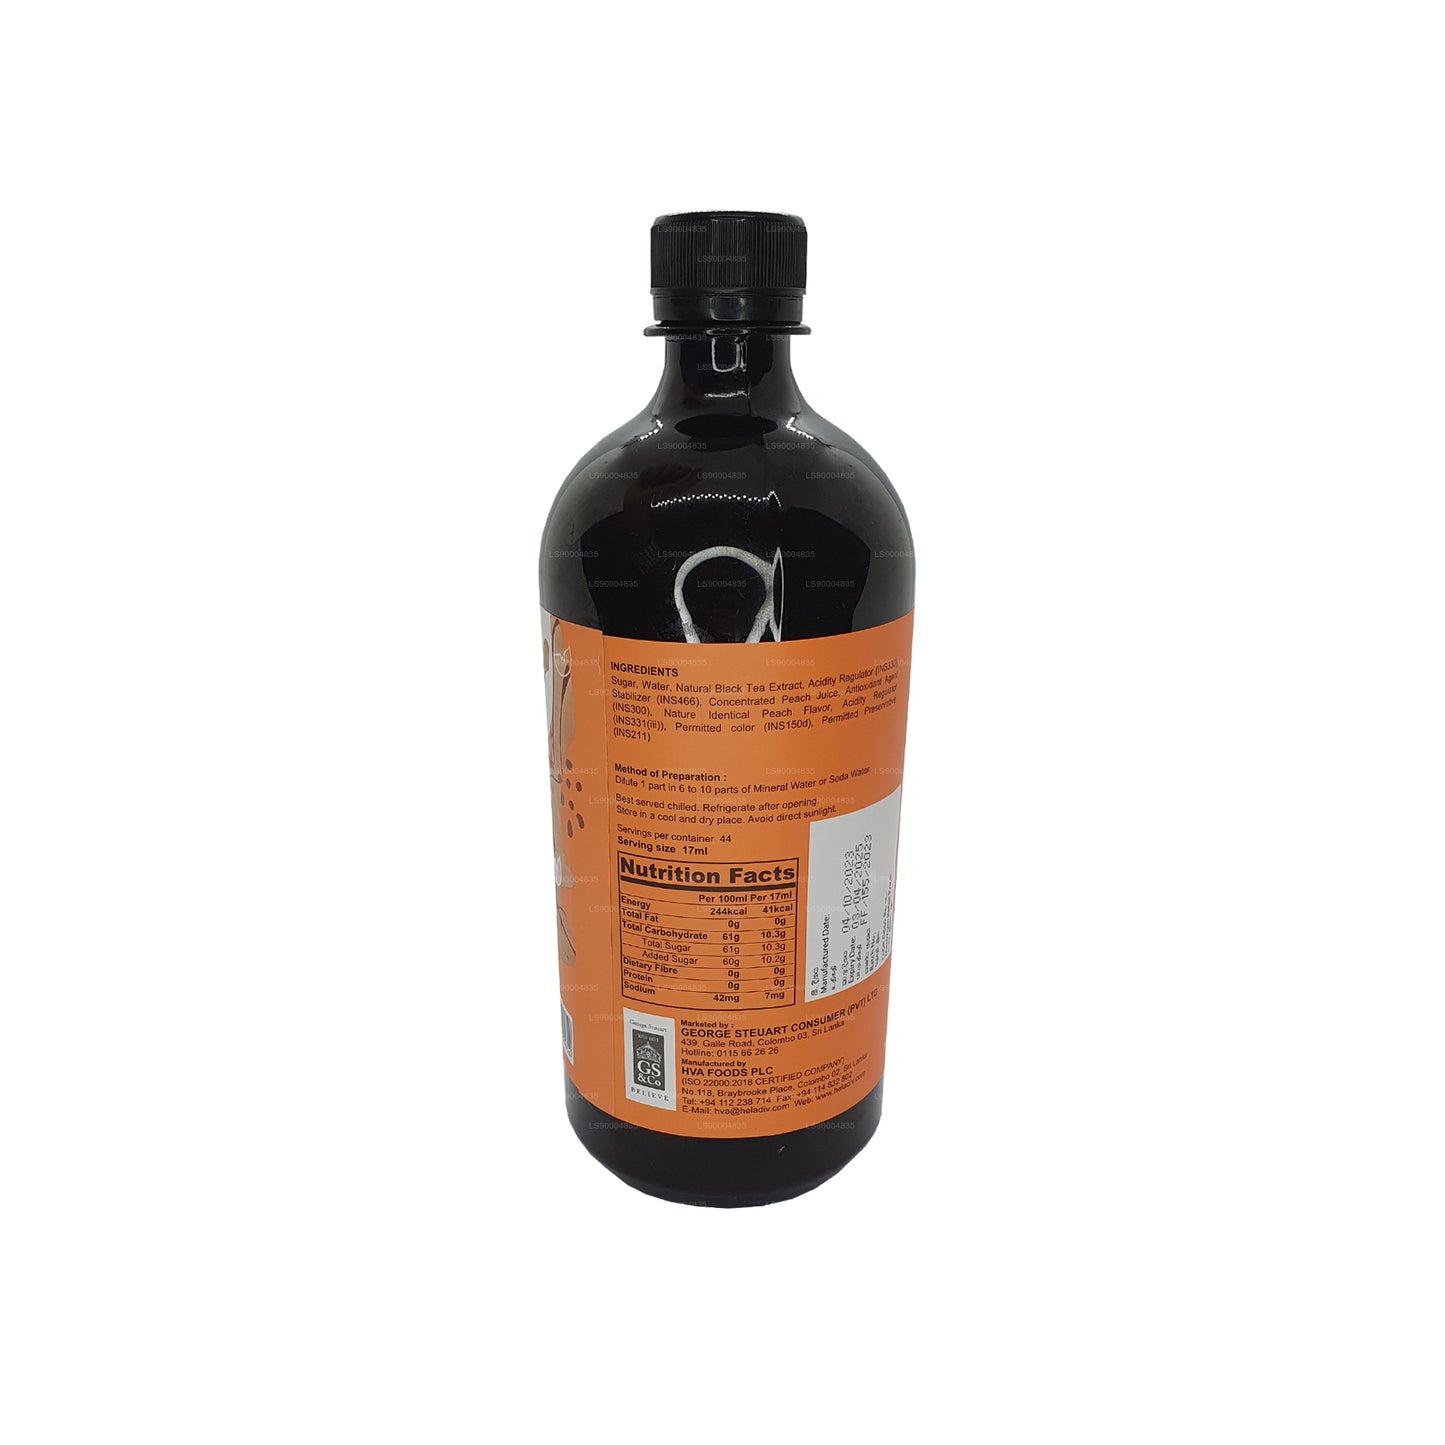 Heladiv Pfirsich-Eistee-Konzentrat Cordial (750 ml)